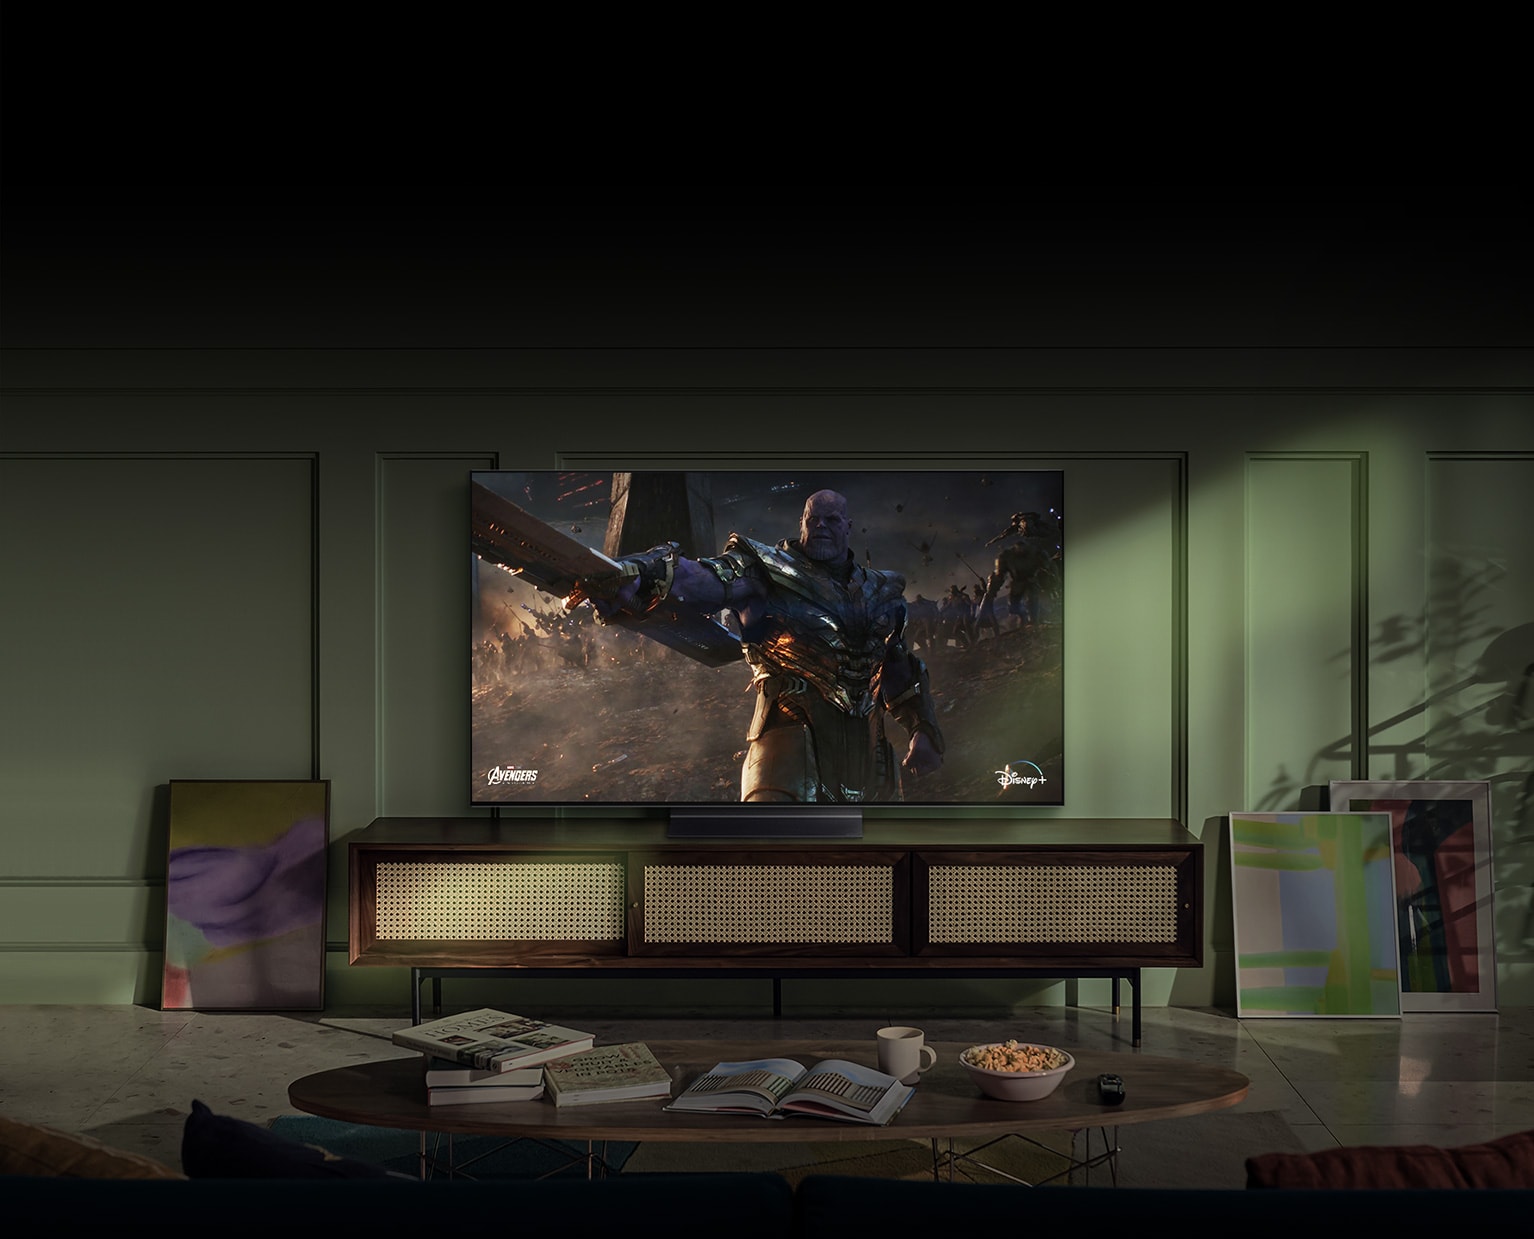 Suuri seinään kiinnitetty LG OLED -televisio näyttää toimintaelokuvan kohtauksen